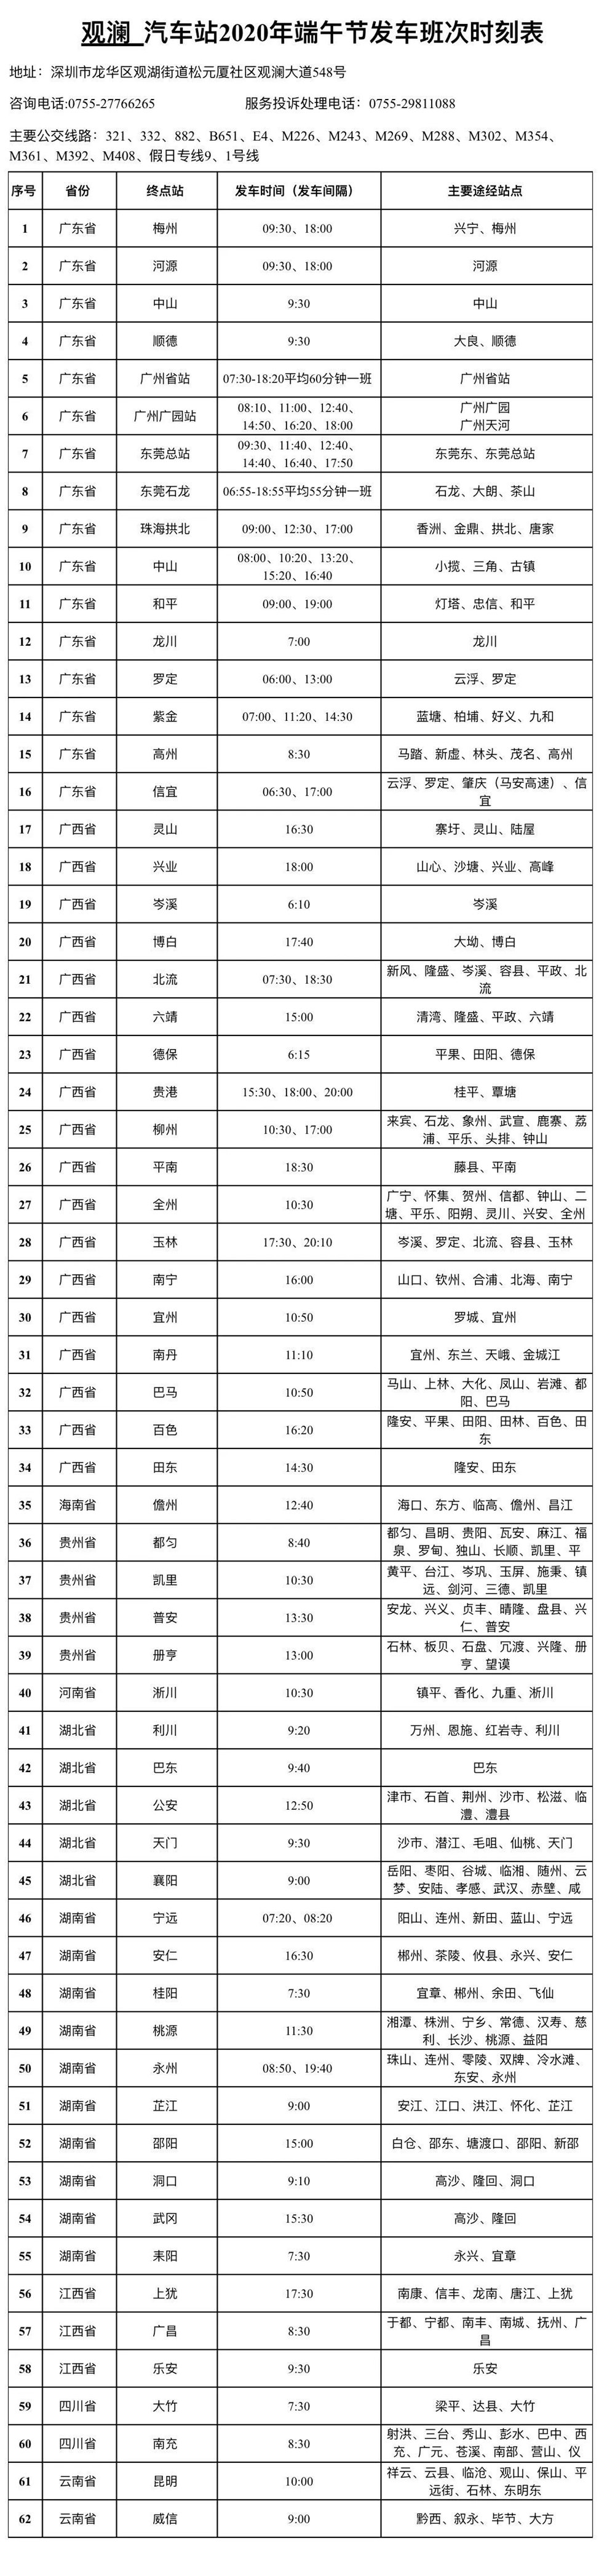 开售 深圳观澜汽车站预售端午节客车票